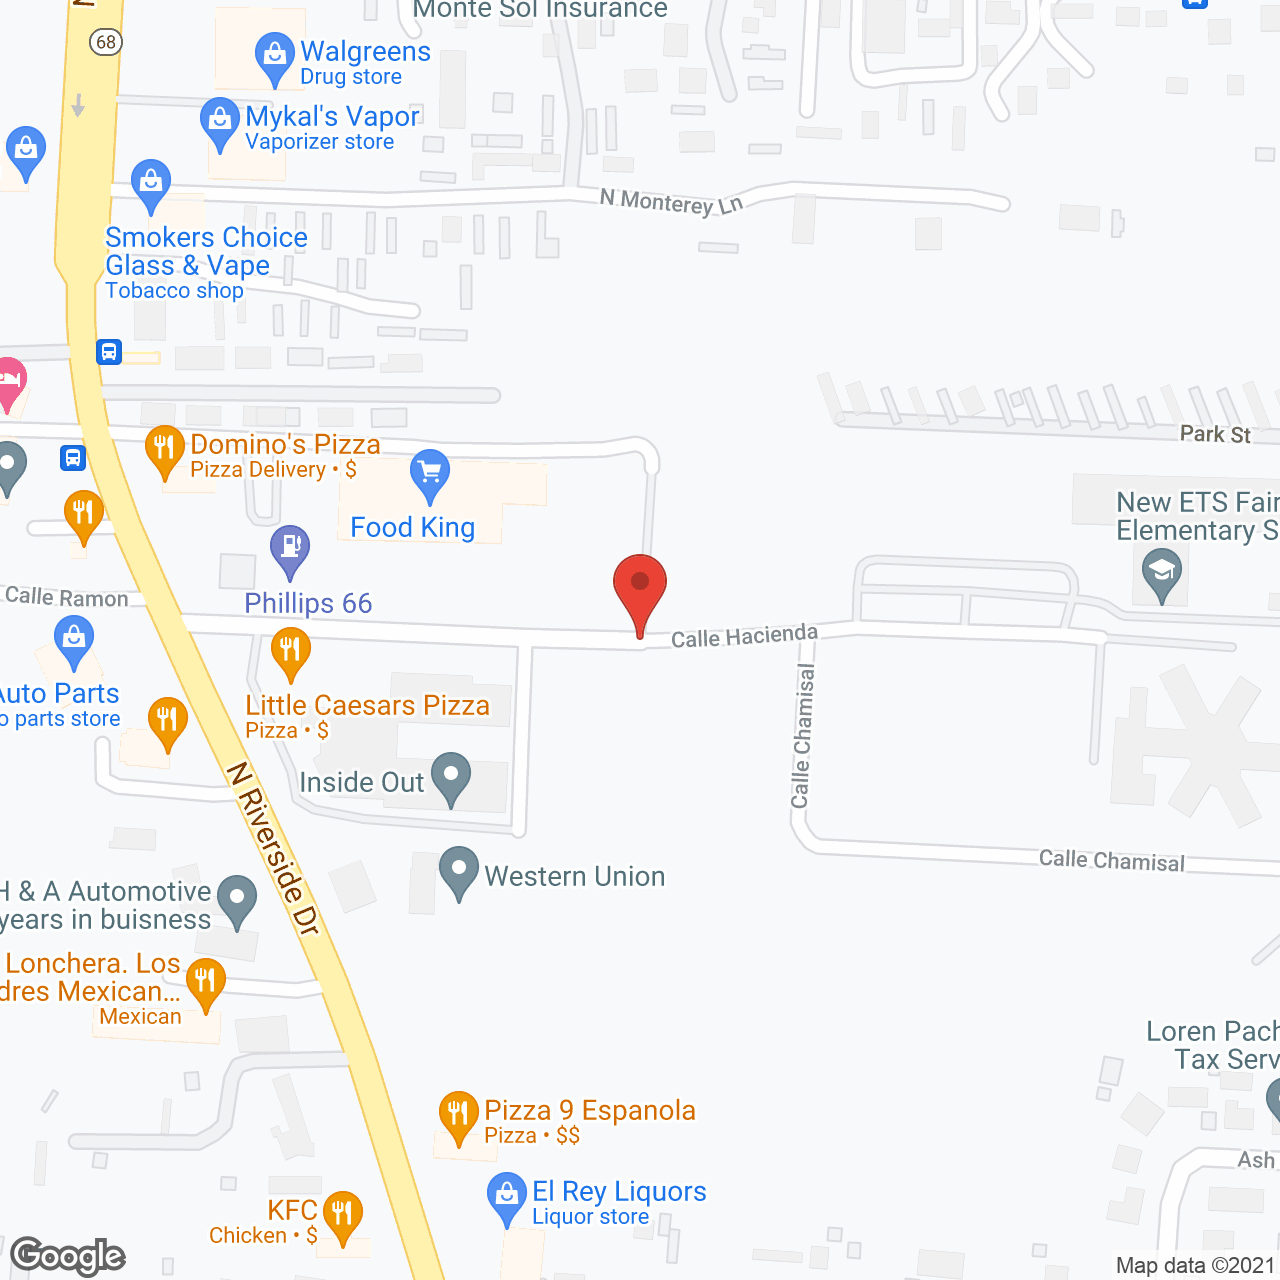 Hacienda De Salud in google map